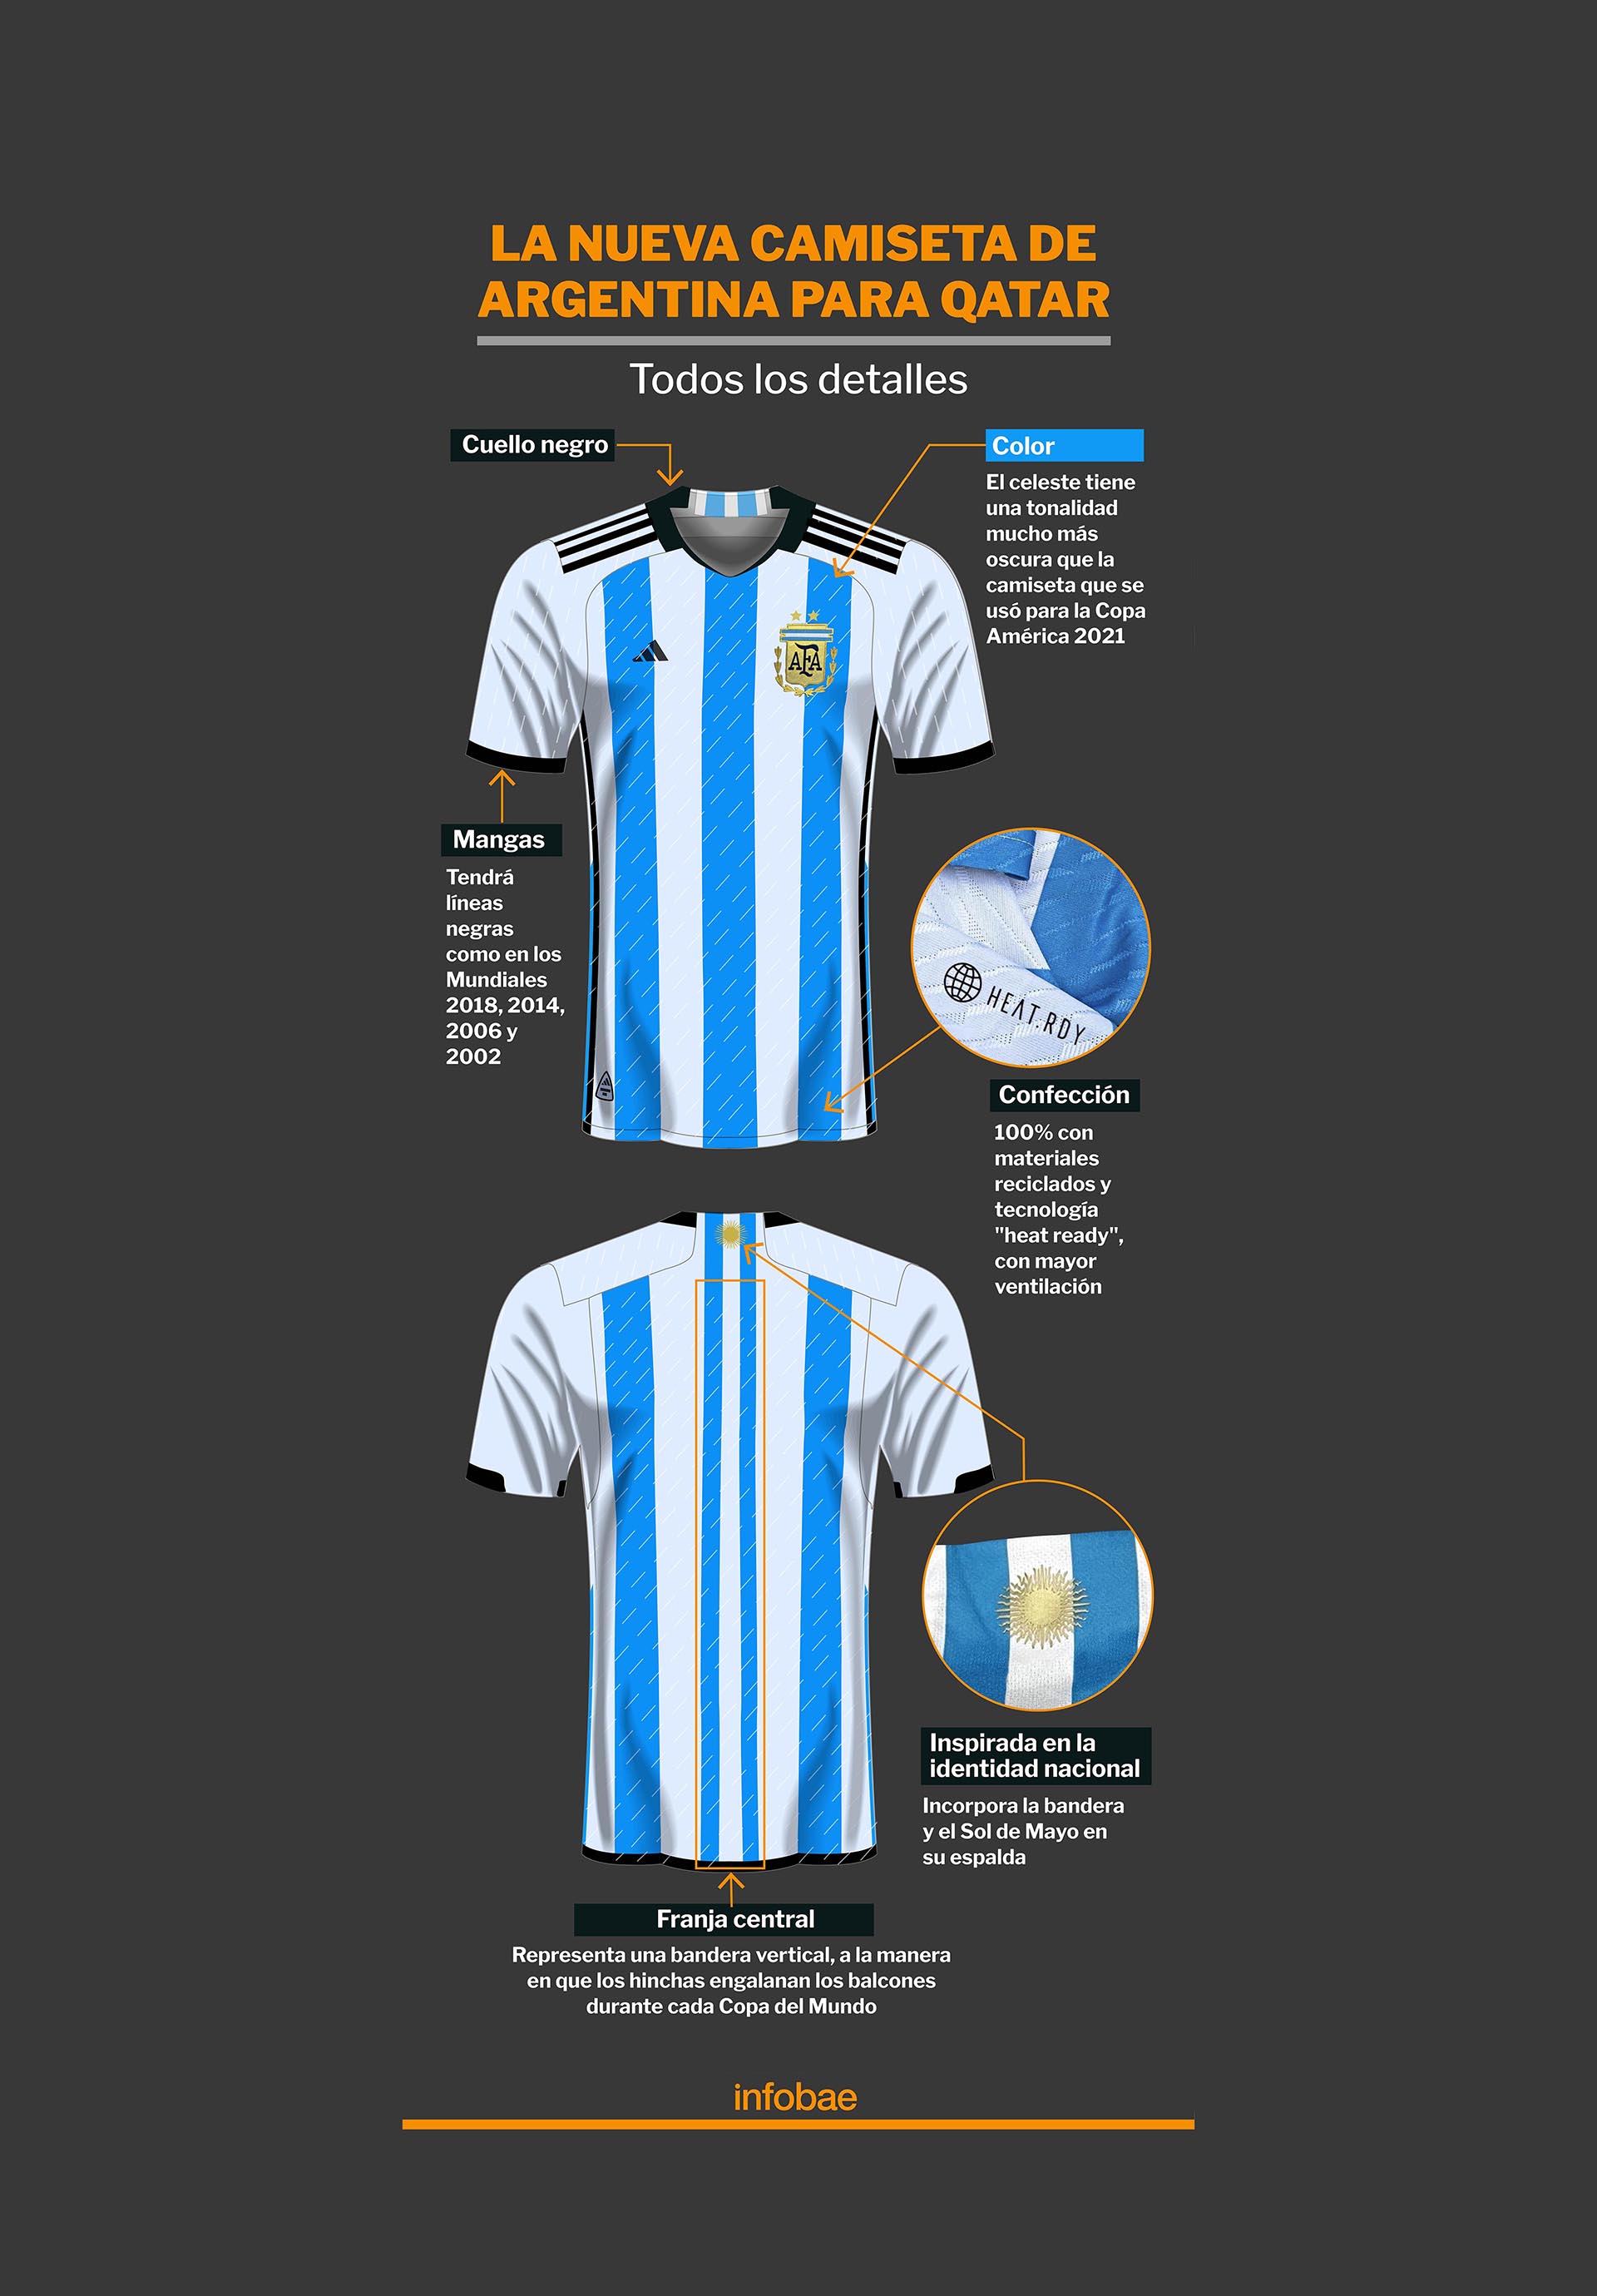 Los detalles de la nueva camiseta (Infografía: Marcelo Regalado)